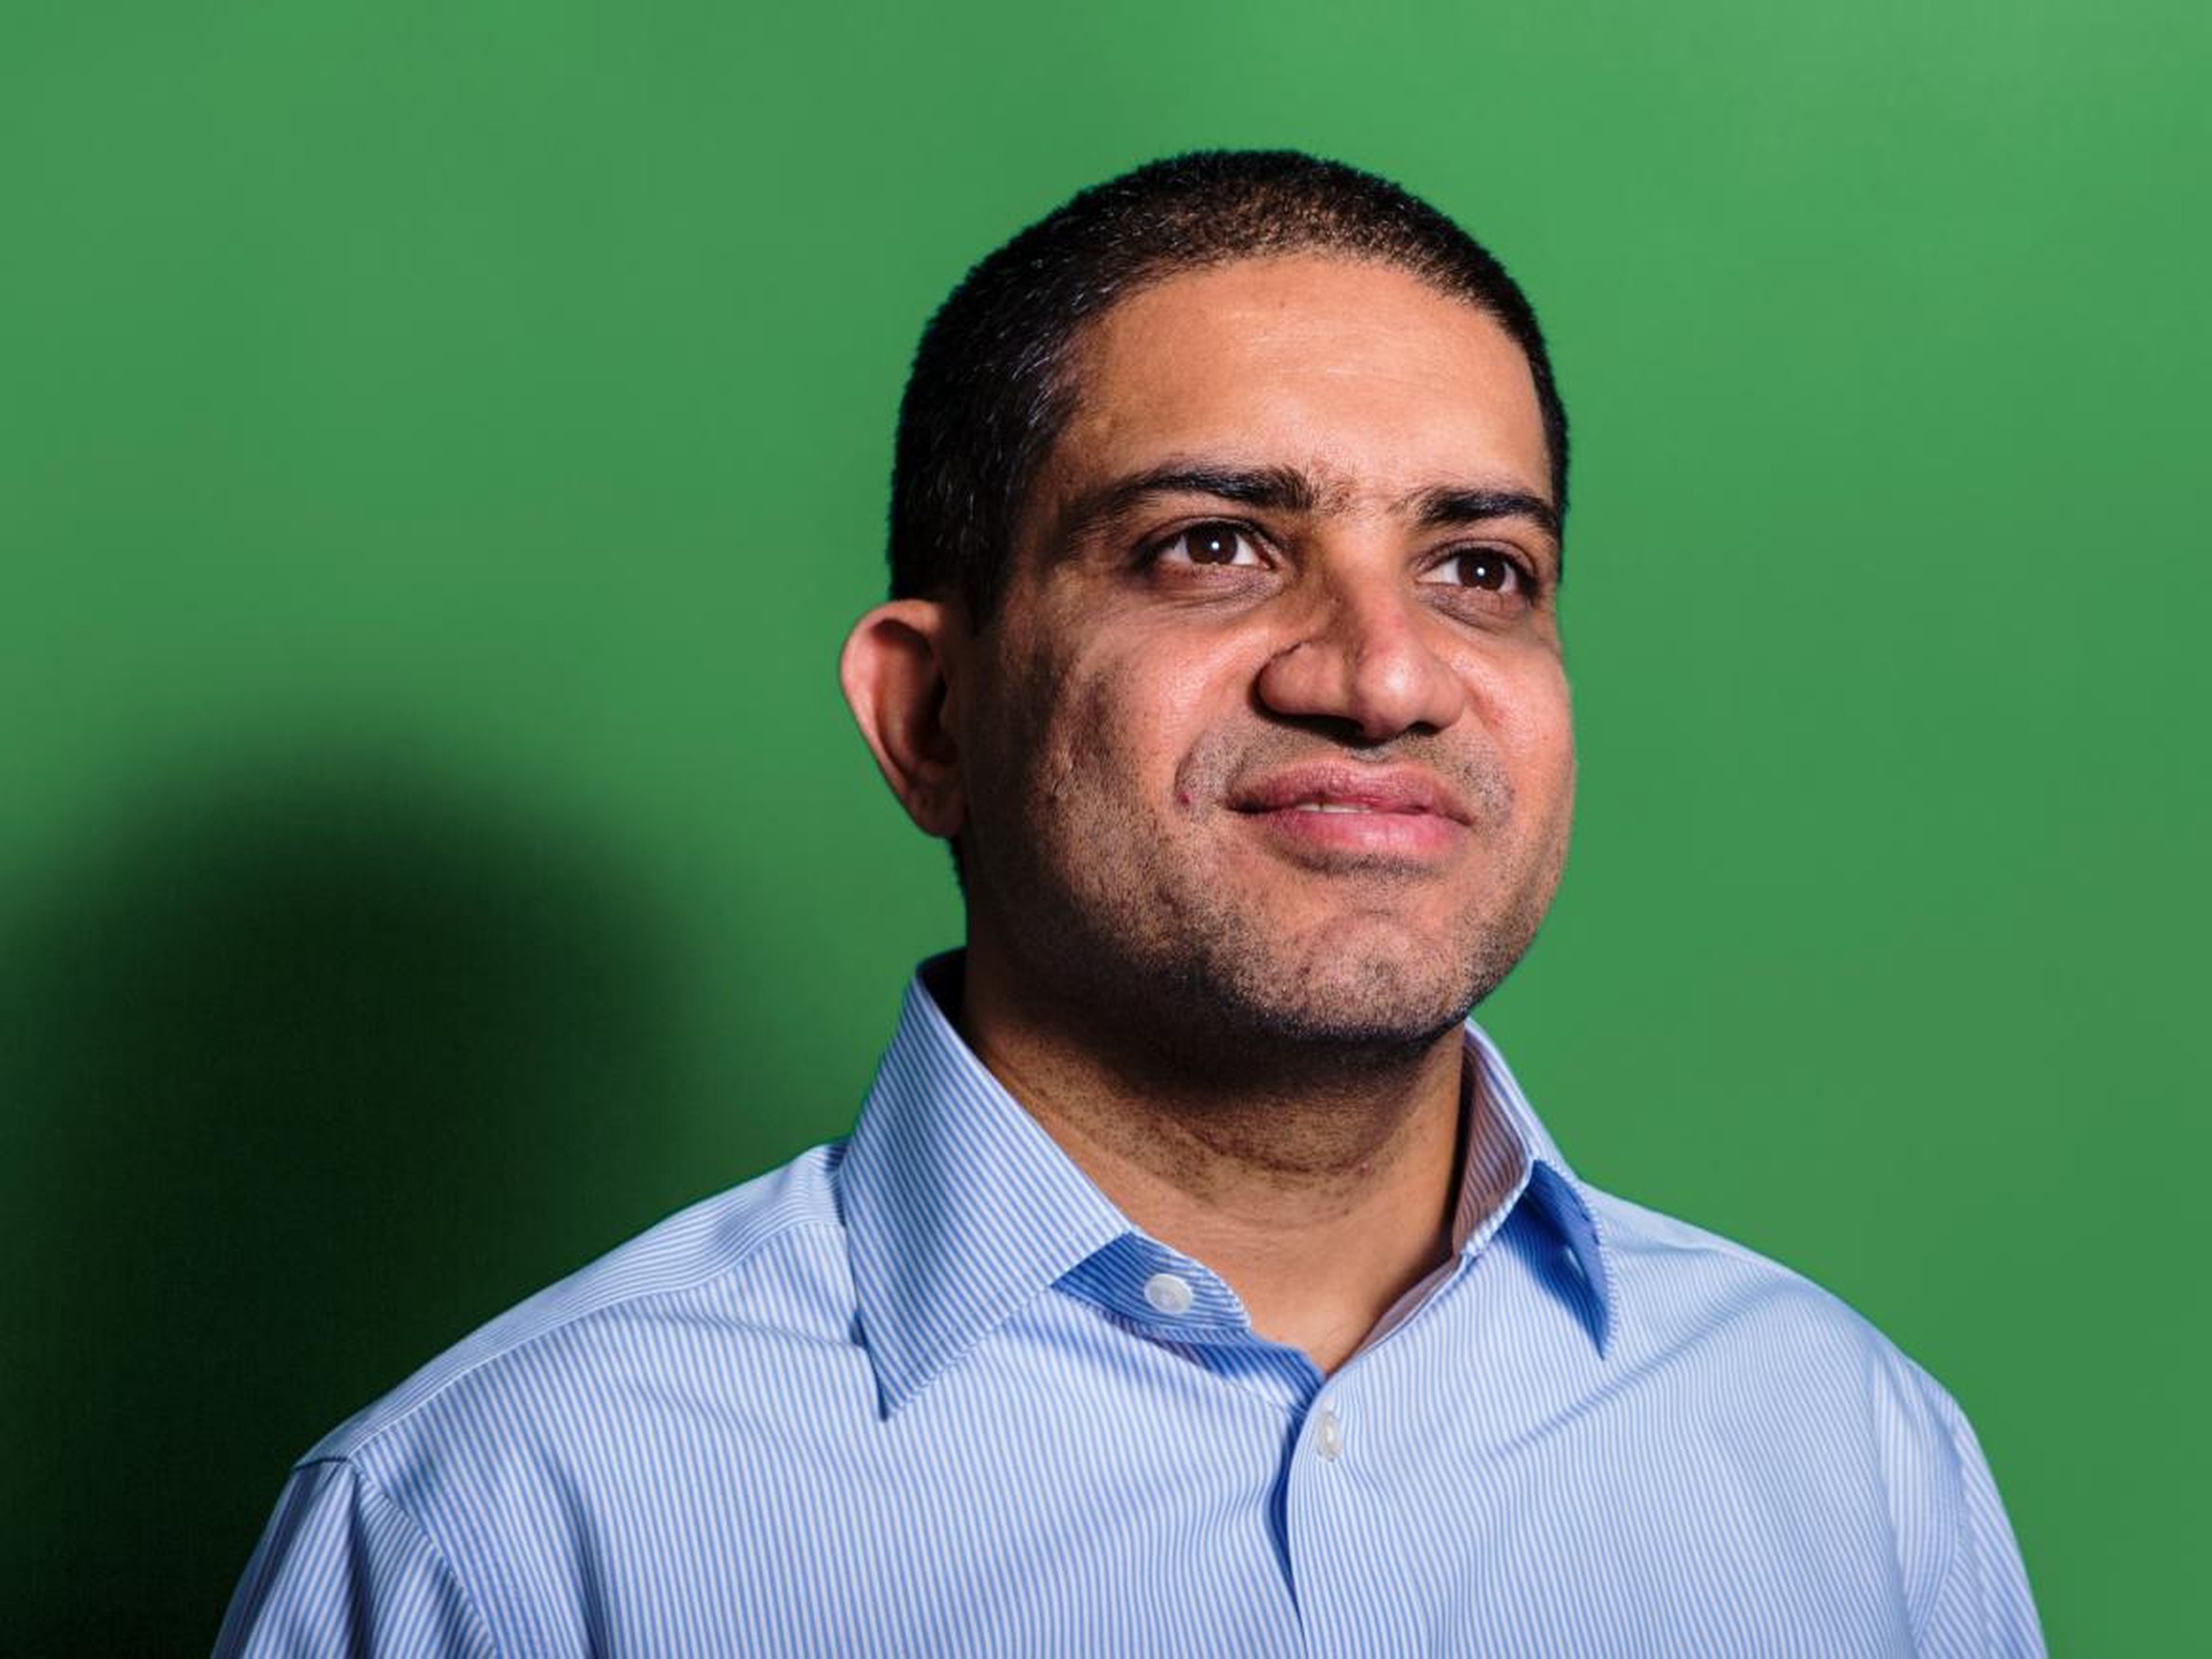 Omer Ismail, jefe de finanzas digitales para las Américas en Goldman Sachs, está creando una cultura de startup dentro de un banco aclamado de Wall Street